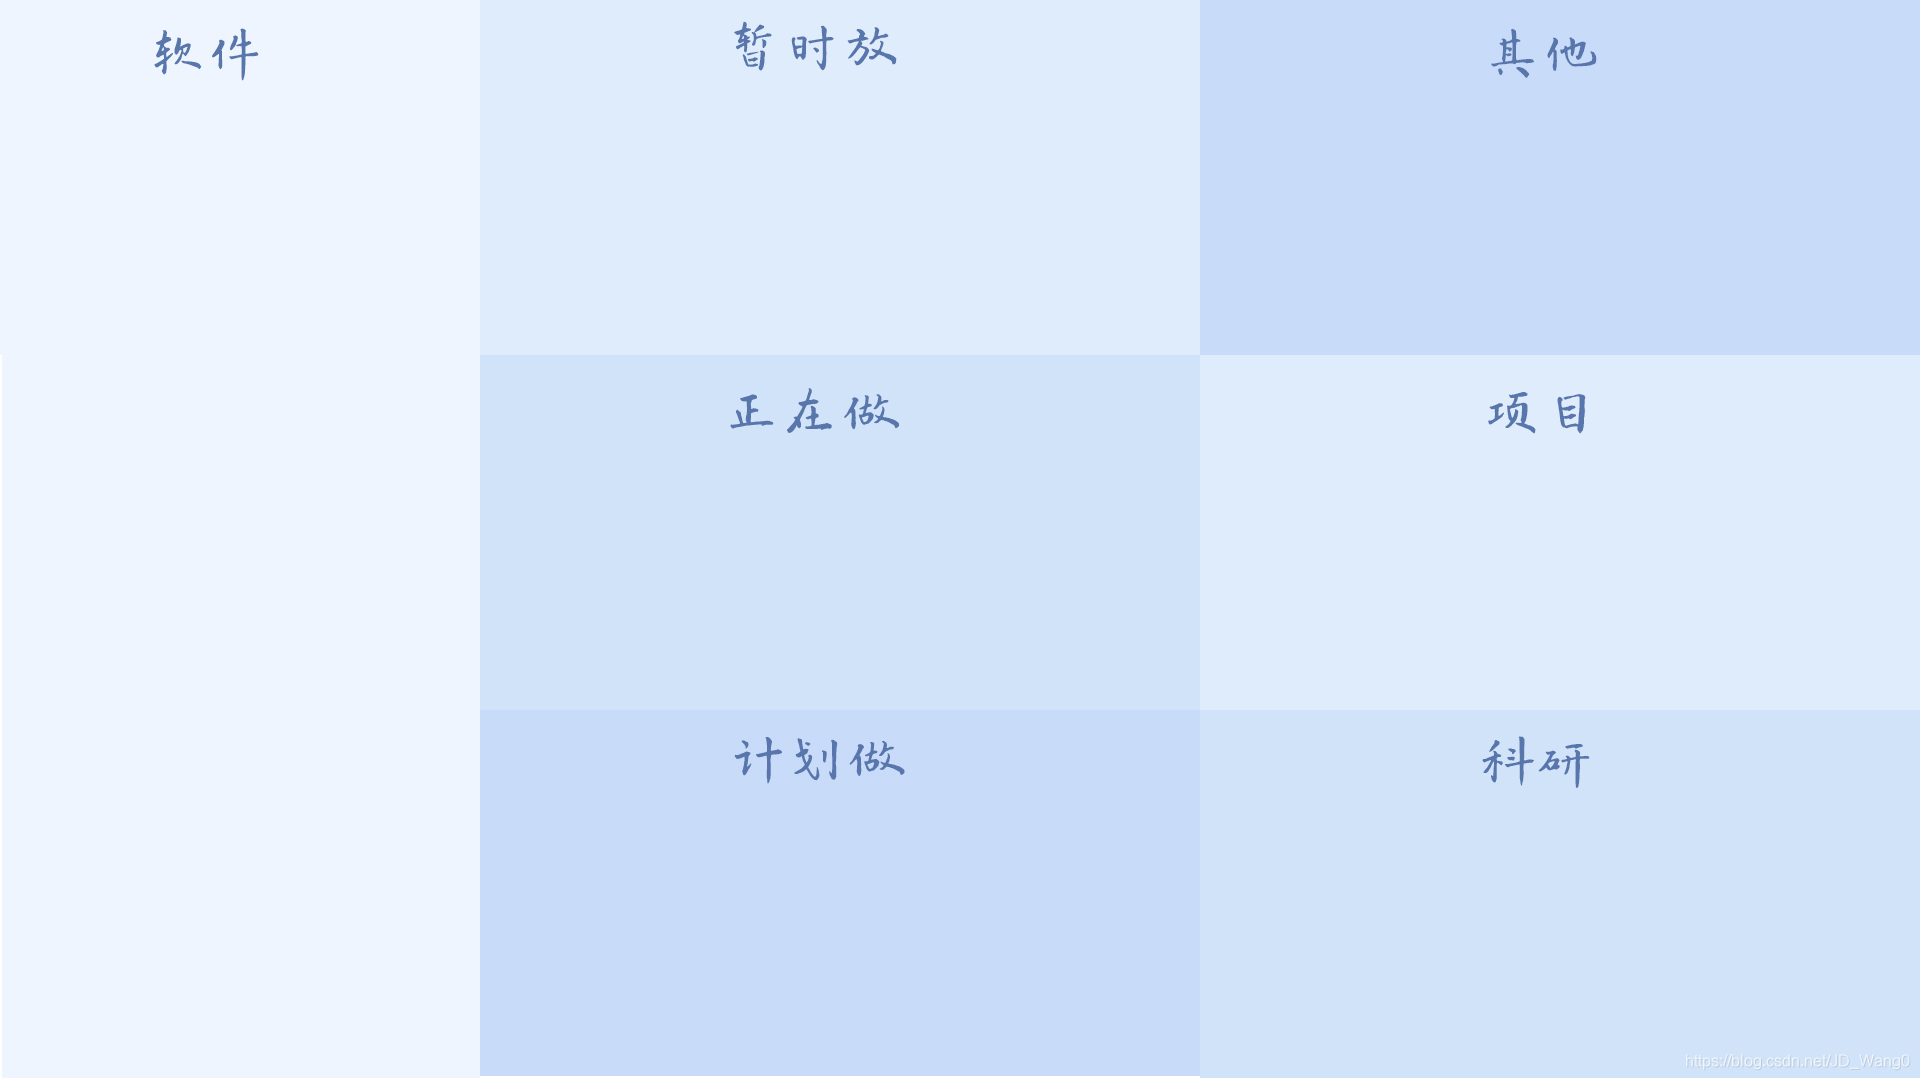 桌面分类壁纸 Jd Wang0的博客 Csdn博客 分类壁纸